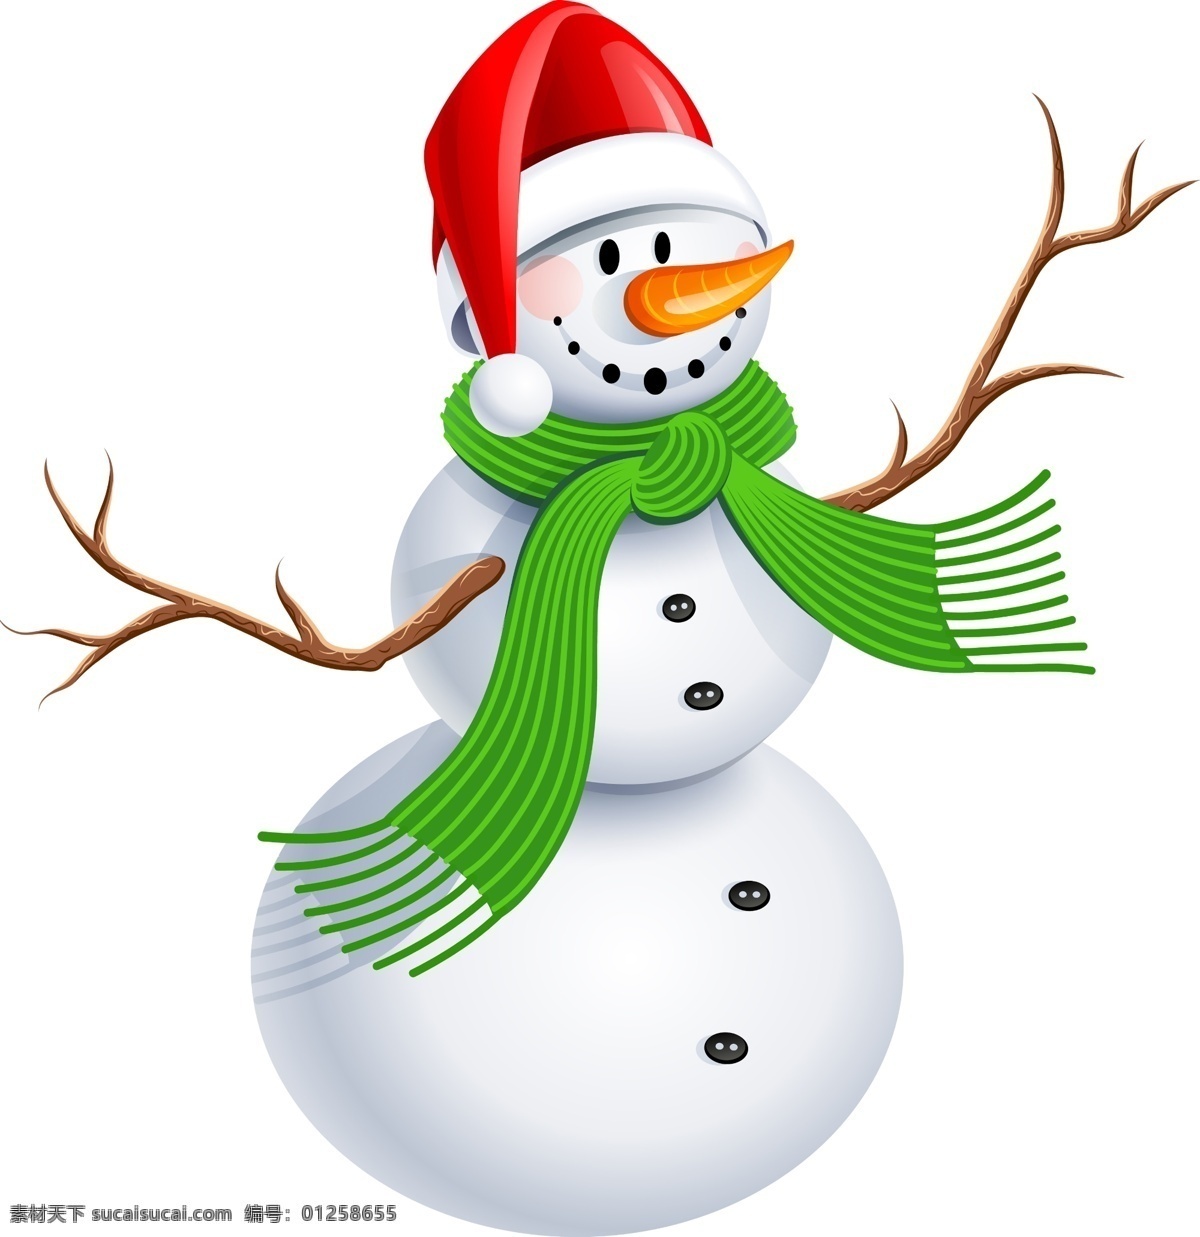 雪人图片 雪人 堆雪人 卡通雪人 圣诞雪人 圣诞老人 圣诞礼物 节日卡通 新年雪人 节日类目 分层